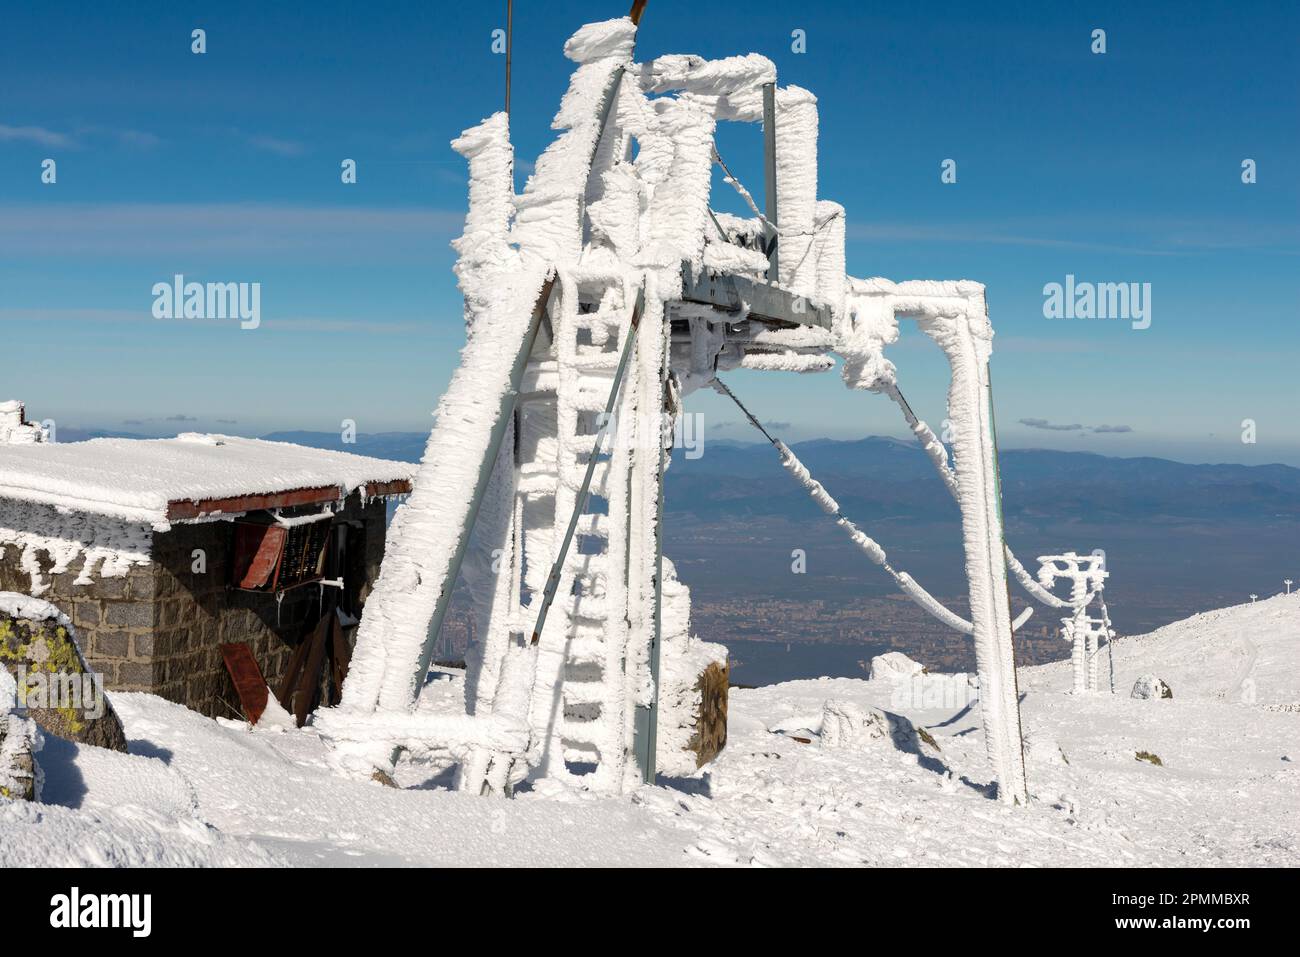 Stazione sciistica e fili ricoperti di neve ghiacciata durante la stagione invernale sulla cima del Black Peak sul monte Vitosha vicino a Sofia, Bulgaria, Balcani Foto Stock